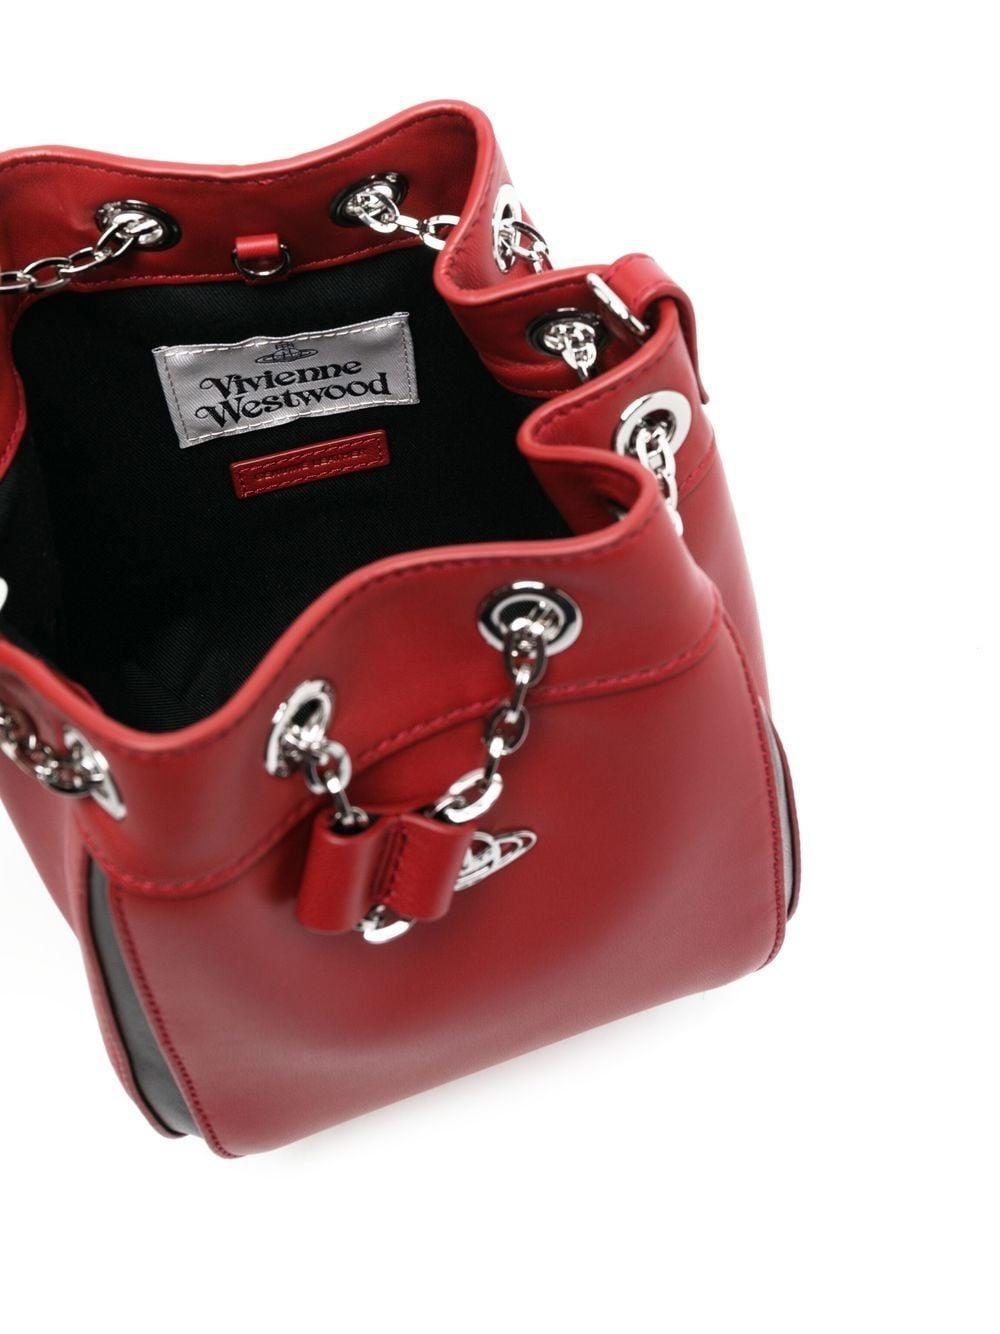 Vivienne Westwood Chrissy Bucket Bag in Red | Lyst